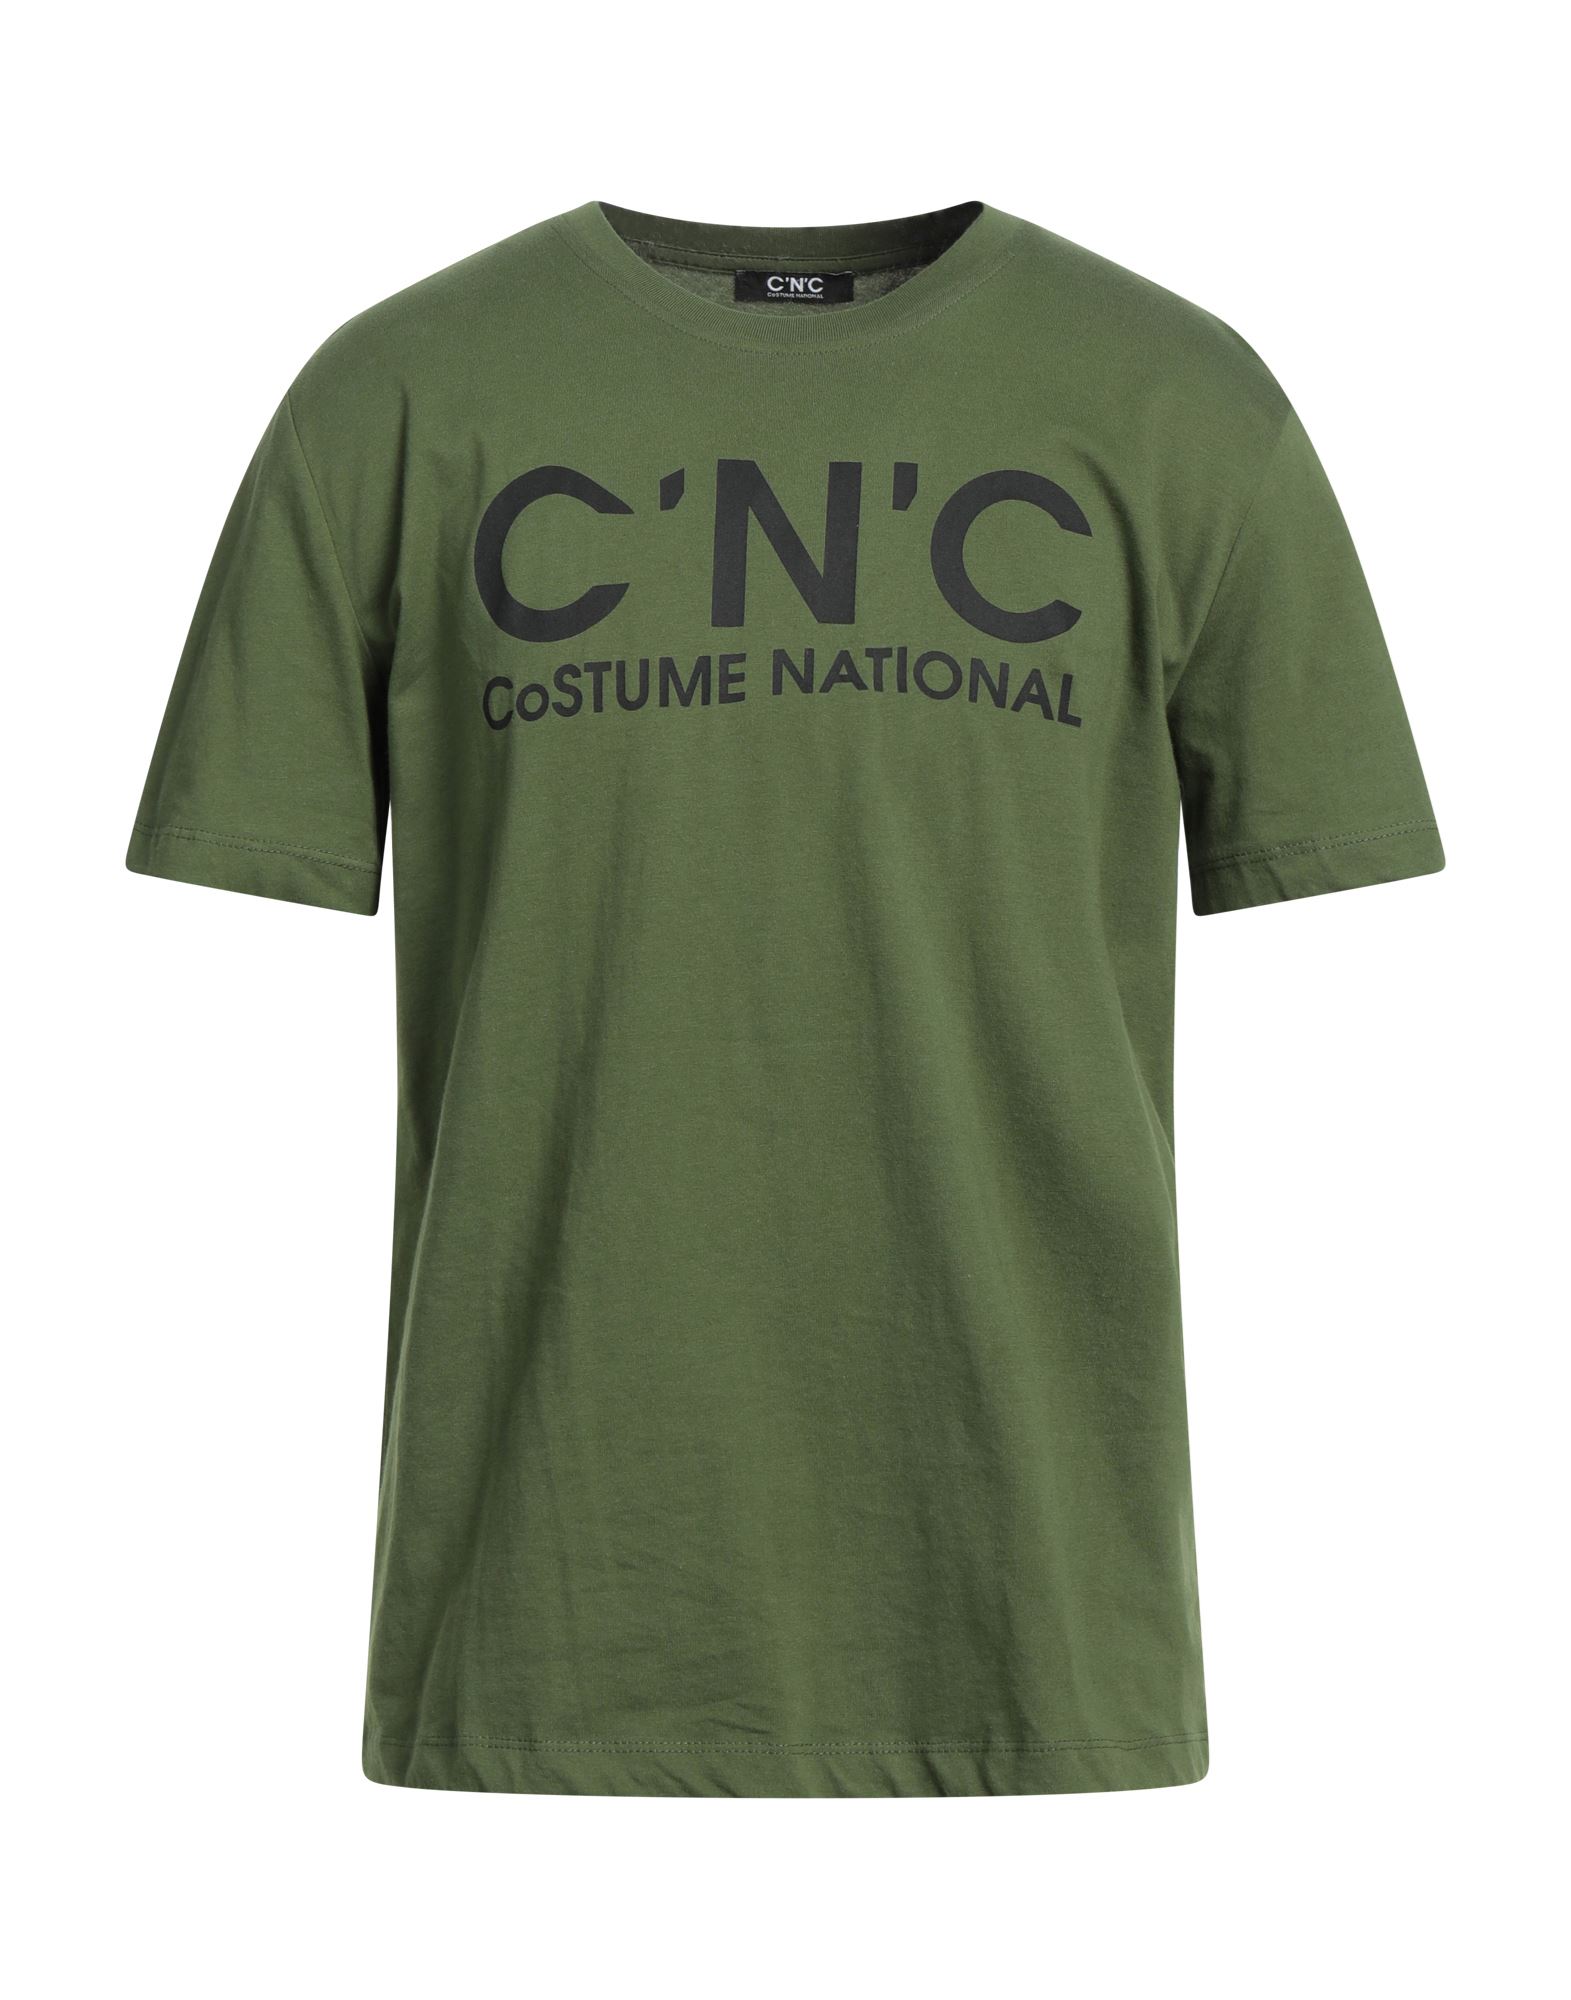 C'N'C' COSTUME NATIONAL T-SHIRTS